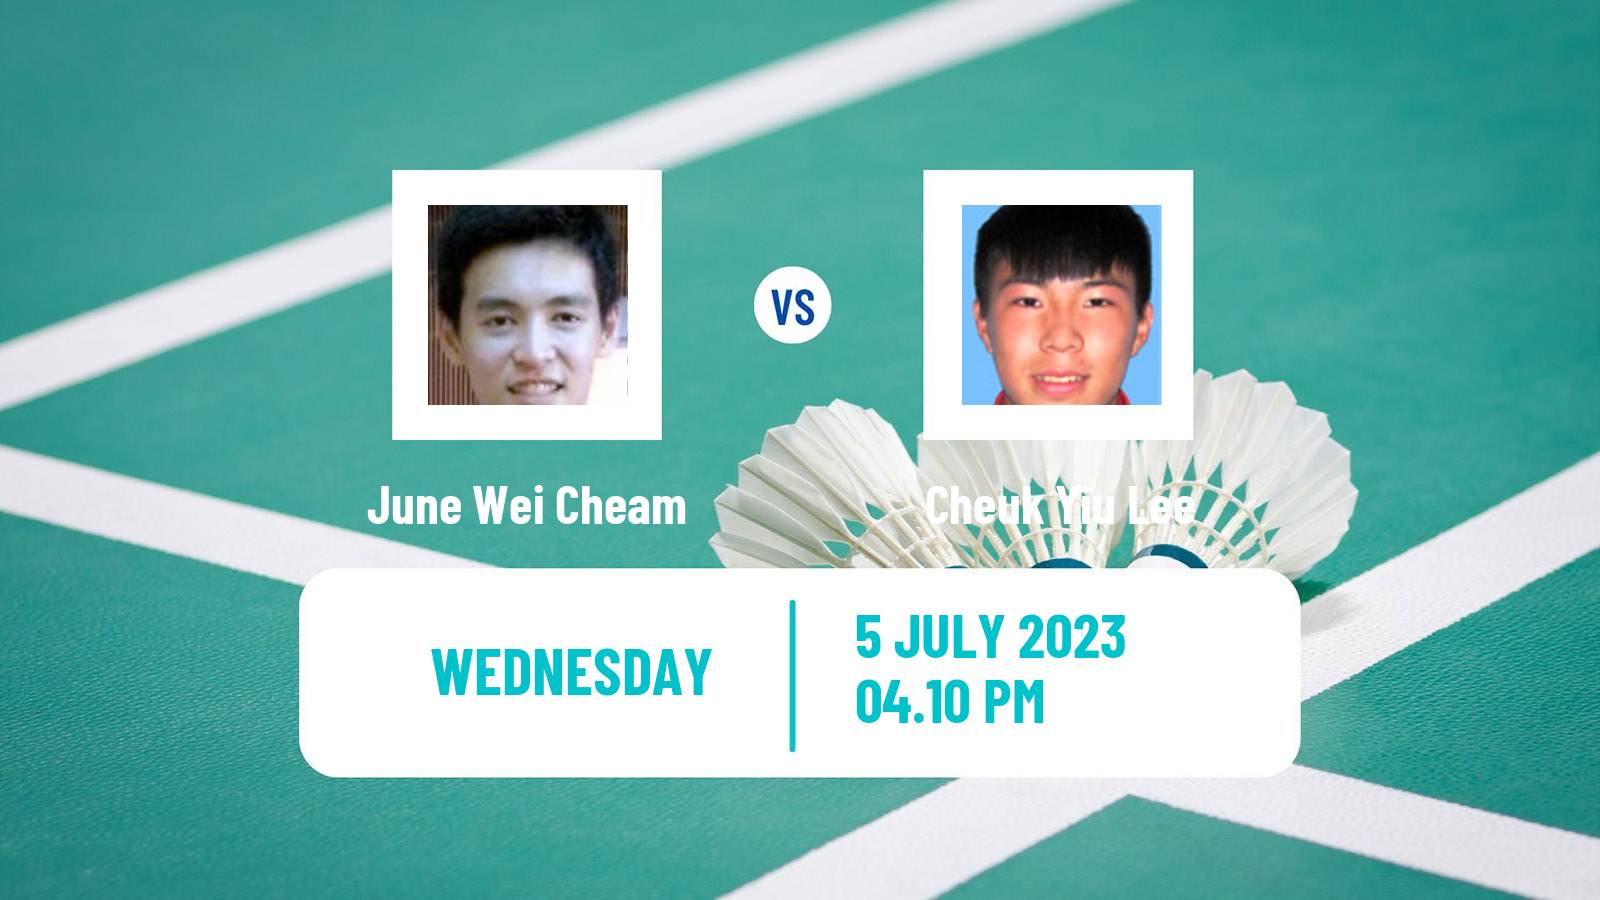 Badminton BWF World Tour Canada Open Men June Wei Cheam - Cheuk Yiu Lee